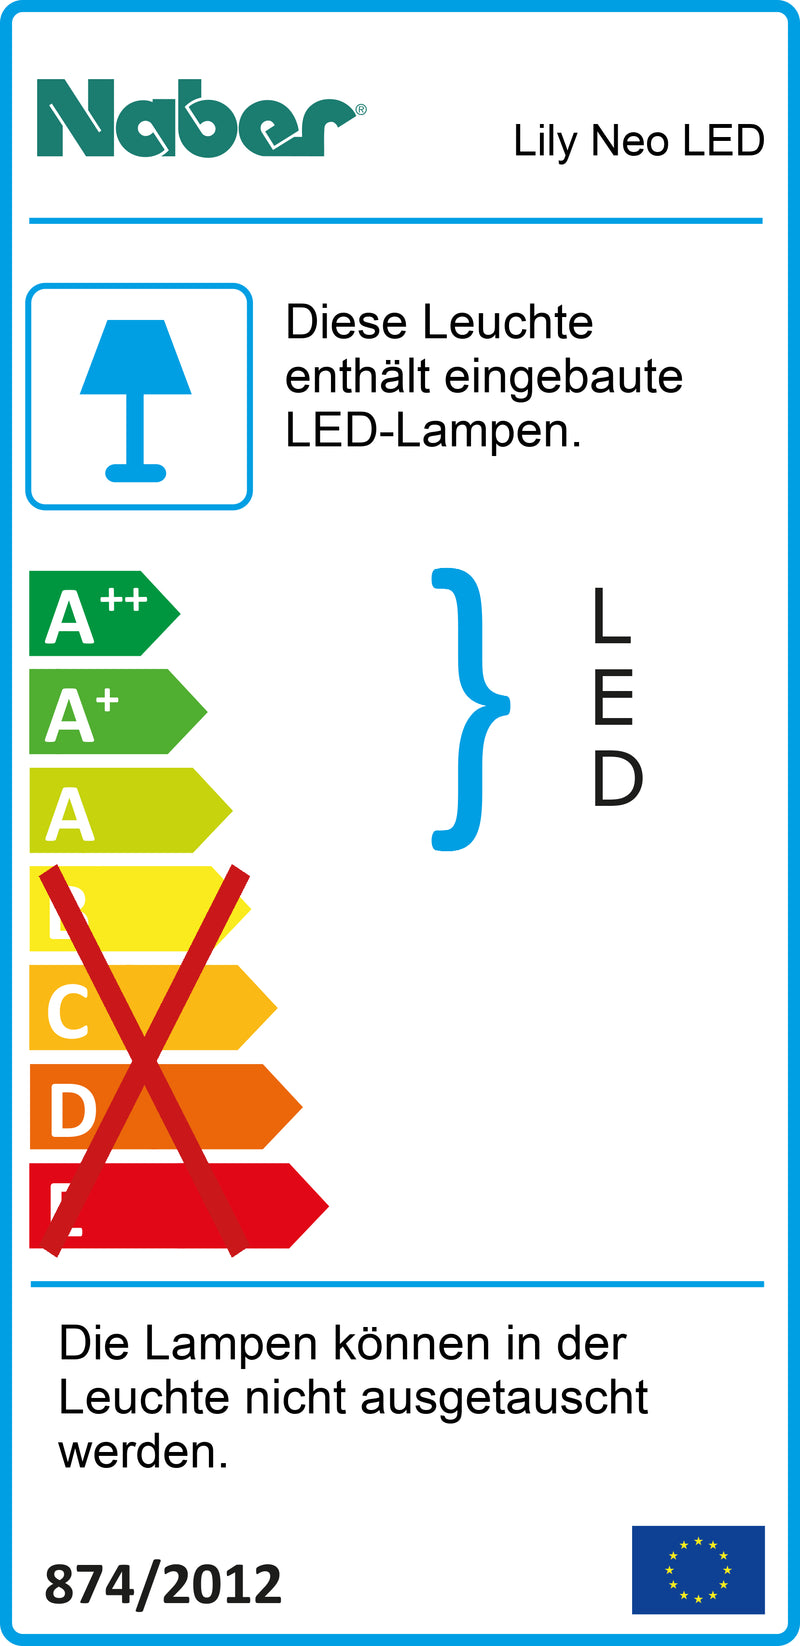 E-Label zu Zeichnung zu Lily Neo LED als Variante L 700 mm, 13 W, edelstahlfarbig von Naber GmbH in der Kategorie Lichttechnik in Österreich auf conceptshop.at